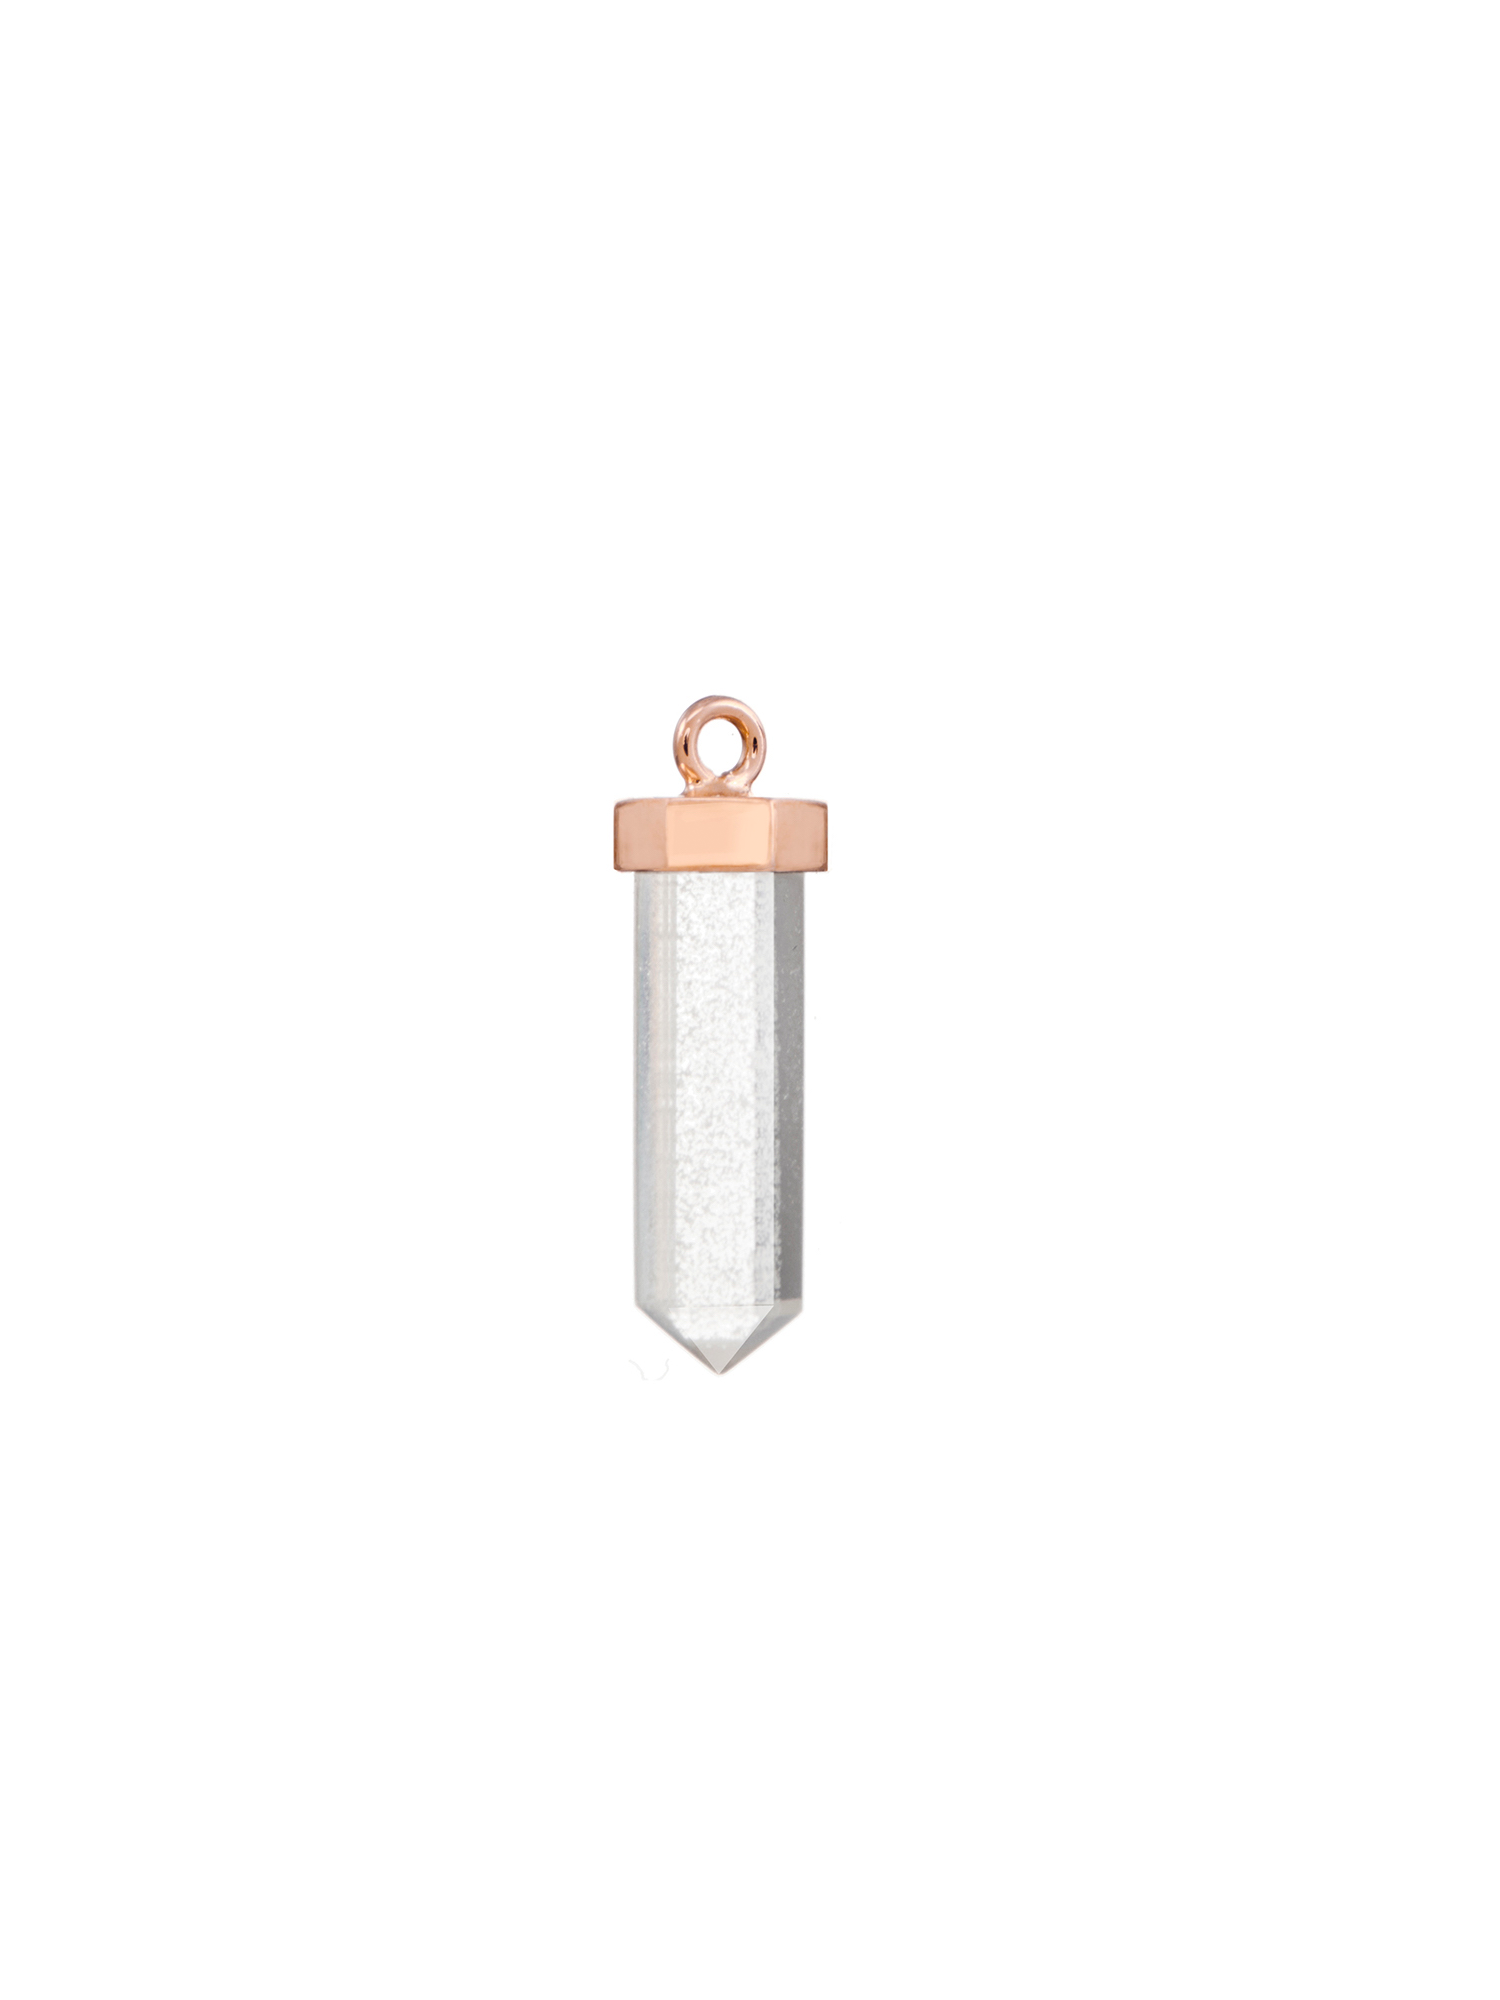 fire flies #2 earring charm | clear quartz